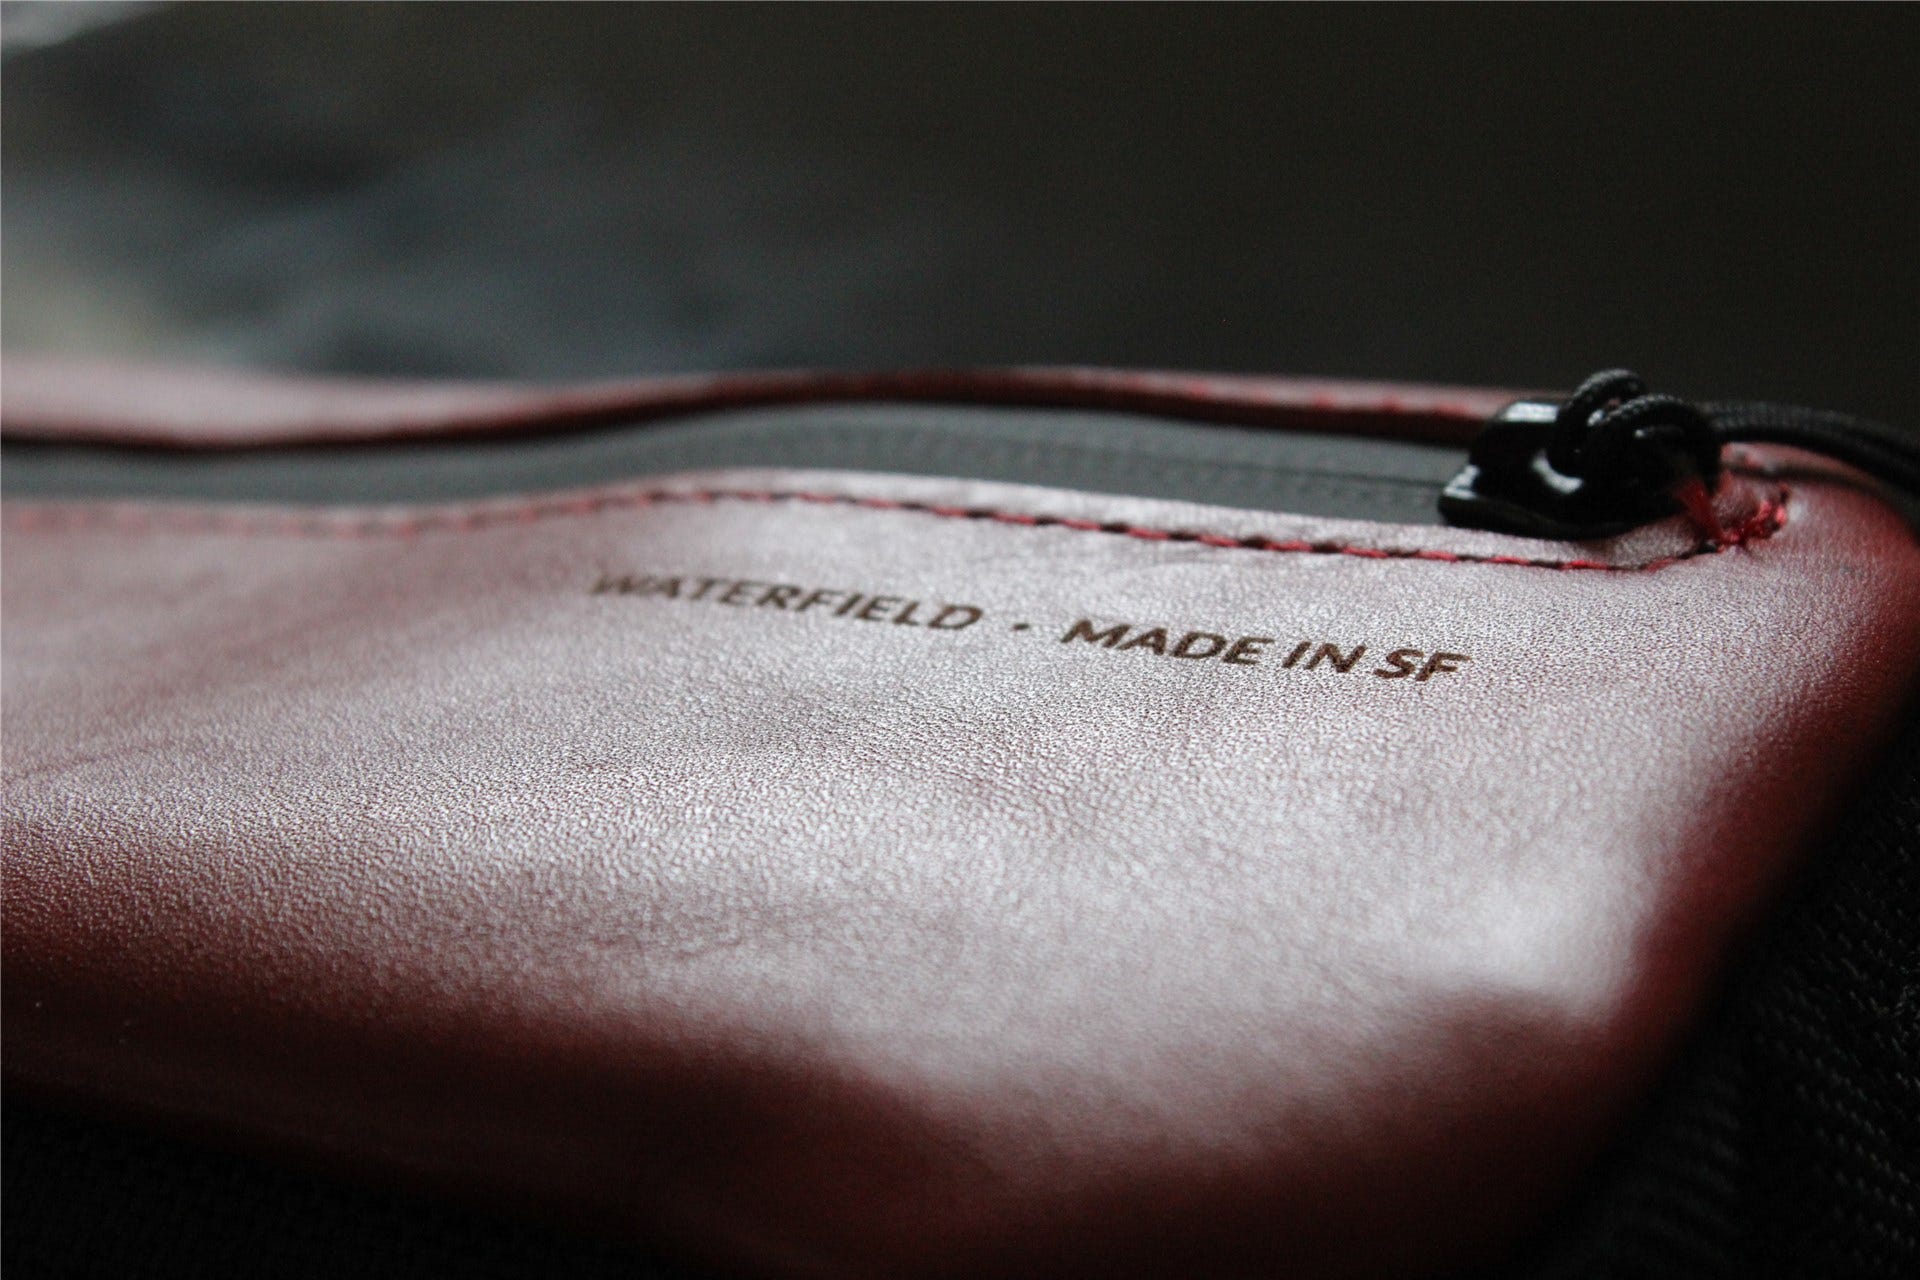 Ảnh chụp macro biểu trưng "Waterfield - Made in SF" trên Hộp đựng dụng cụ bỏ túi Crimson Jersey